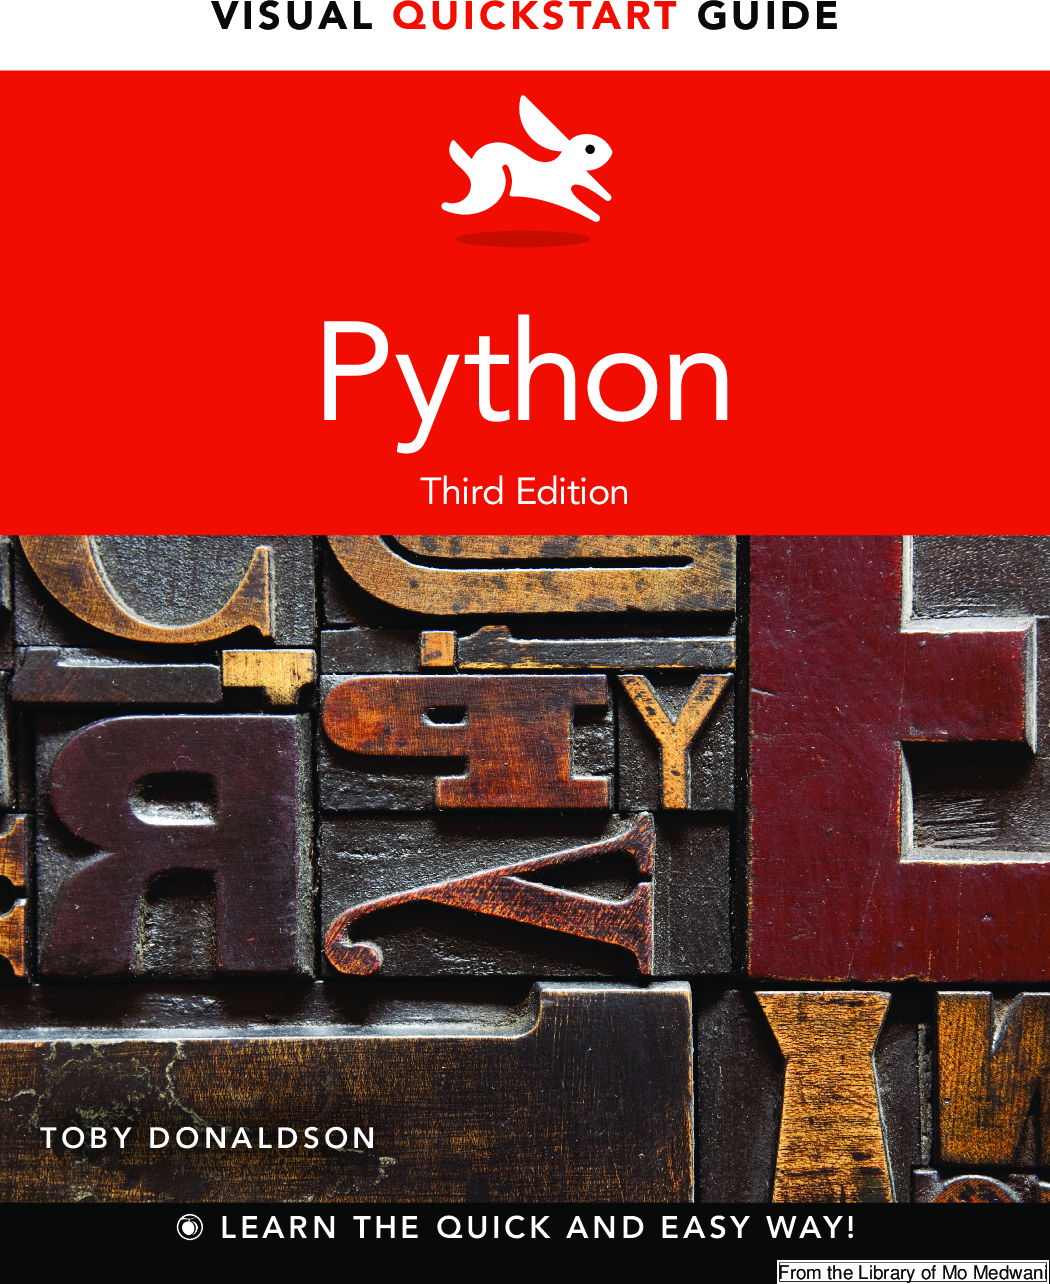 Python语言程序设计基础 第二版（嵩天著）课后答案第三章（思考与练习）_python复数 2.3e+3-1.34e-3j 的实部和虚部分别 ...